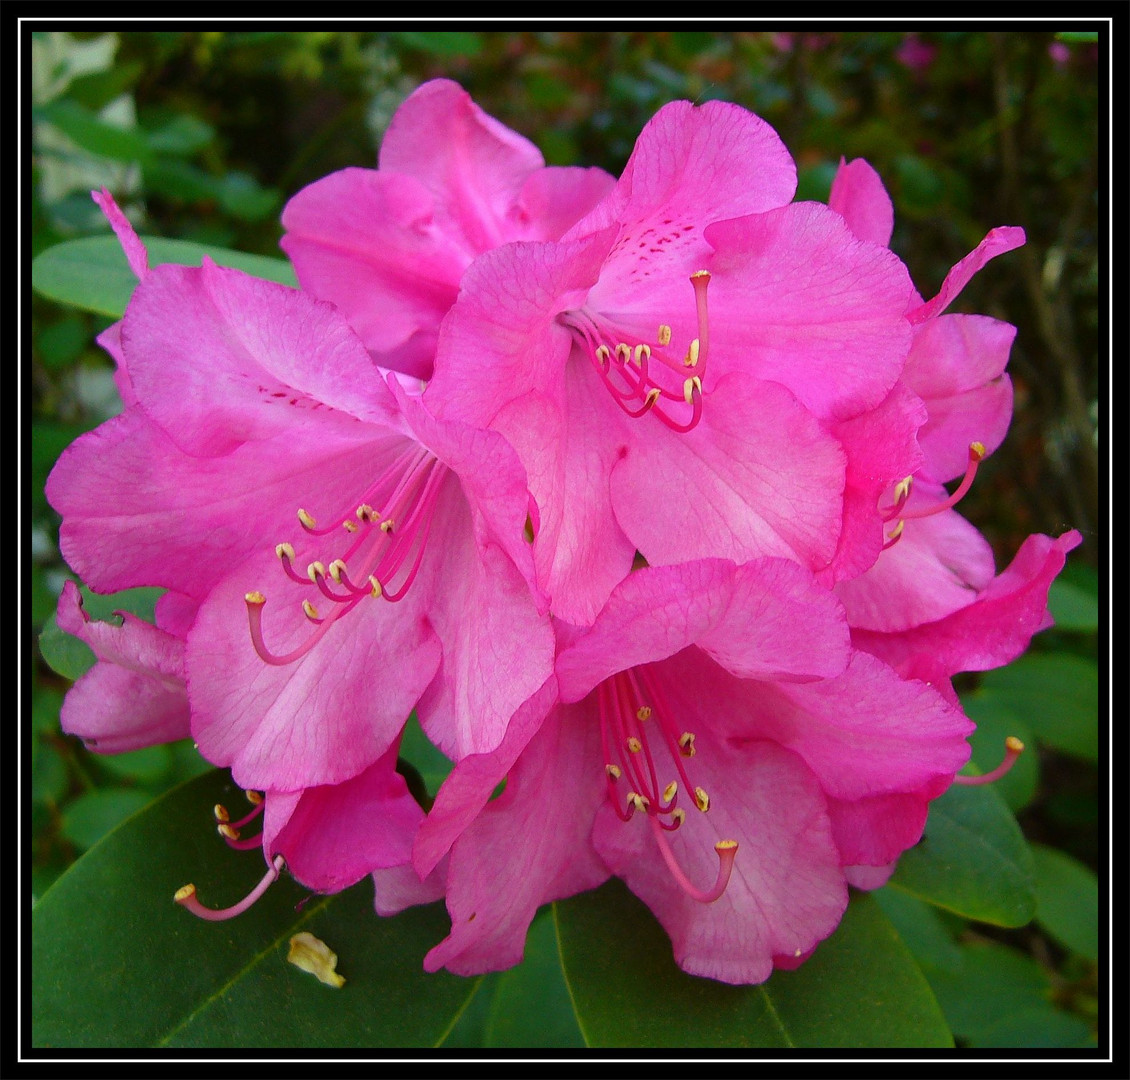 Rhododendronblüte - ein Fest der Farben